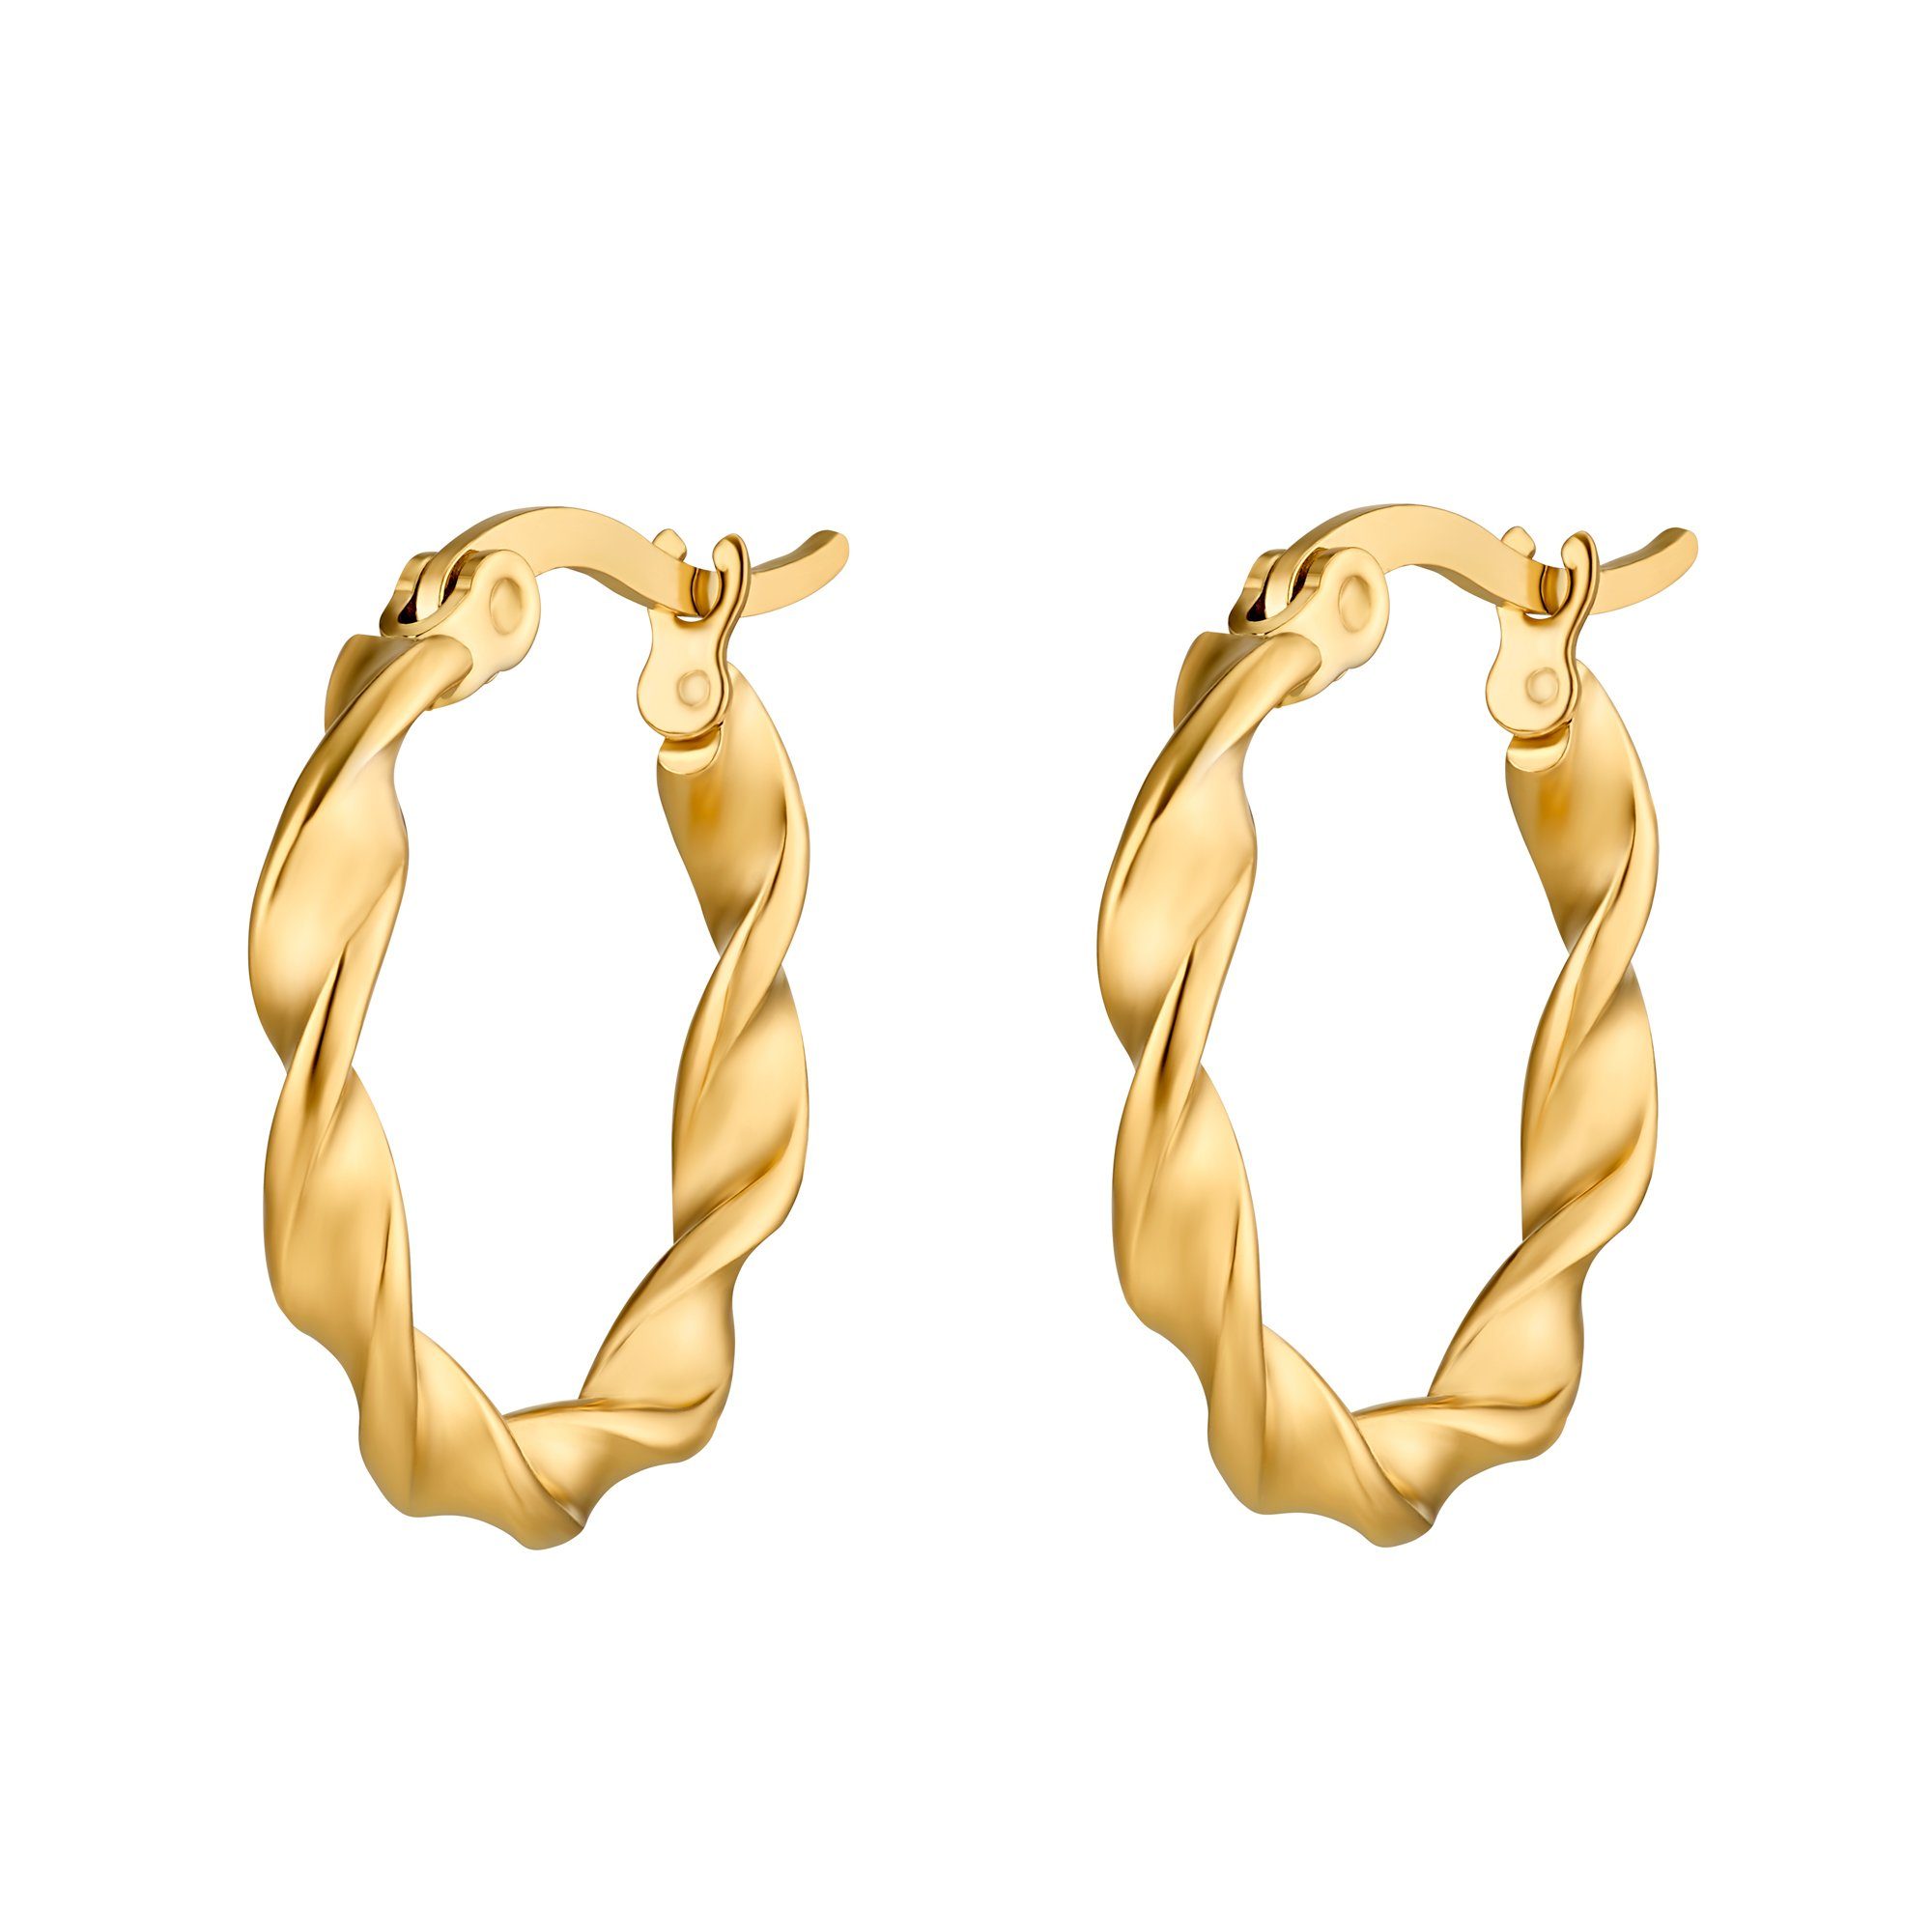 Heideman Paar Ohrstecker Domed goldfarben (Ohrringe, inkl.  Geschenkverpackung), Paar Creolen mit Clip